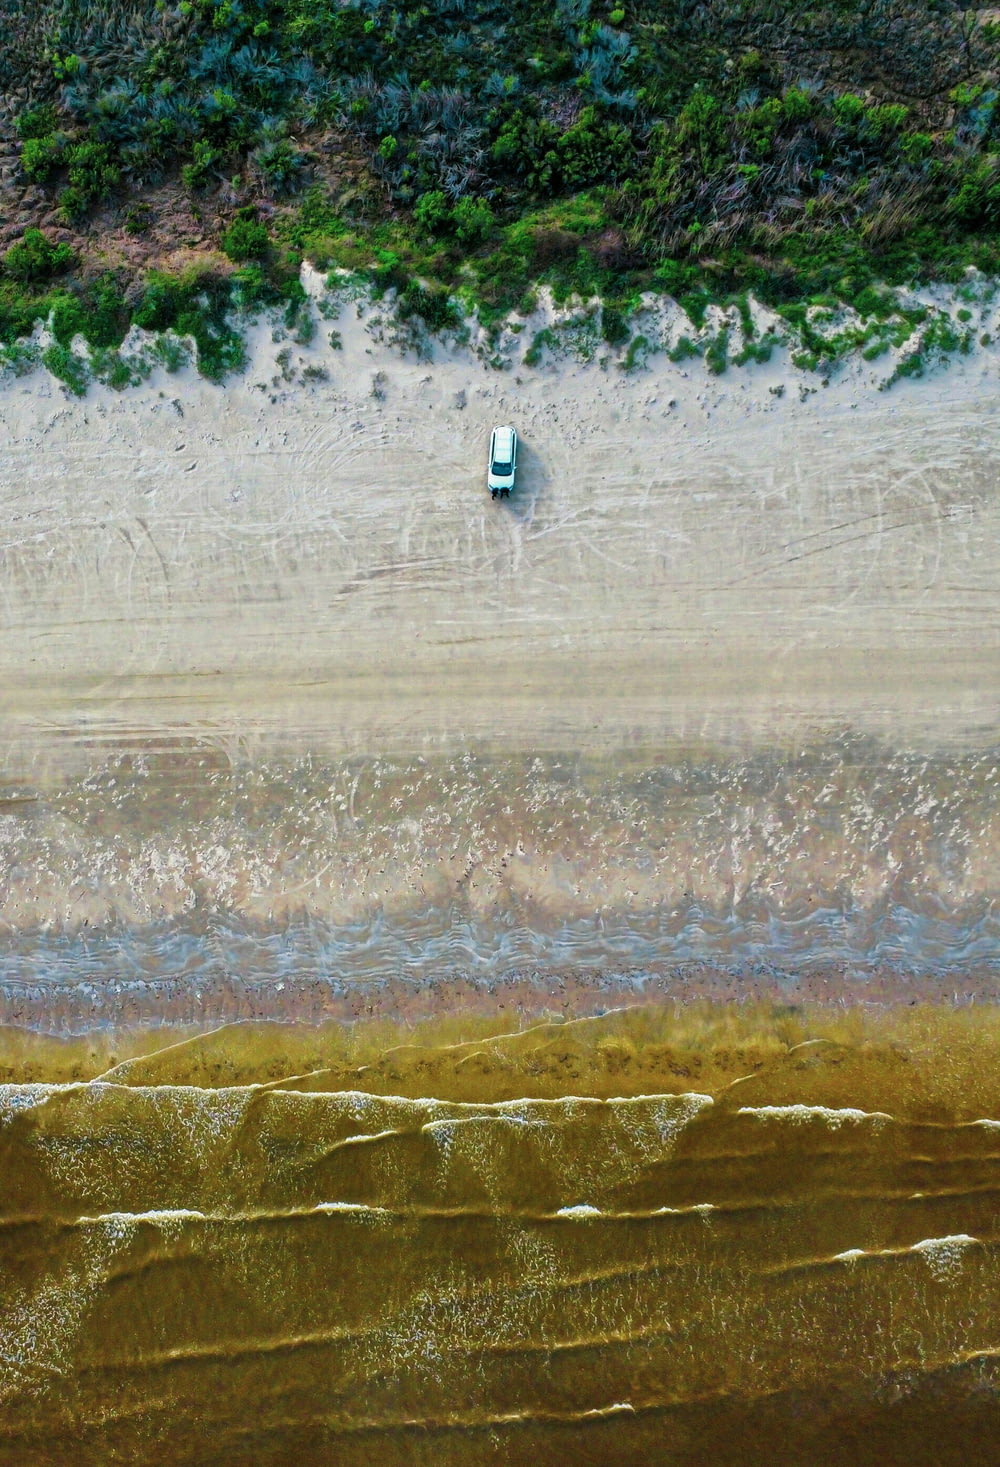 Una veduta aerea di una spiaggia con una barca in acqua